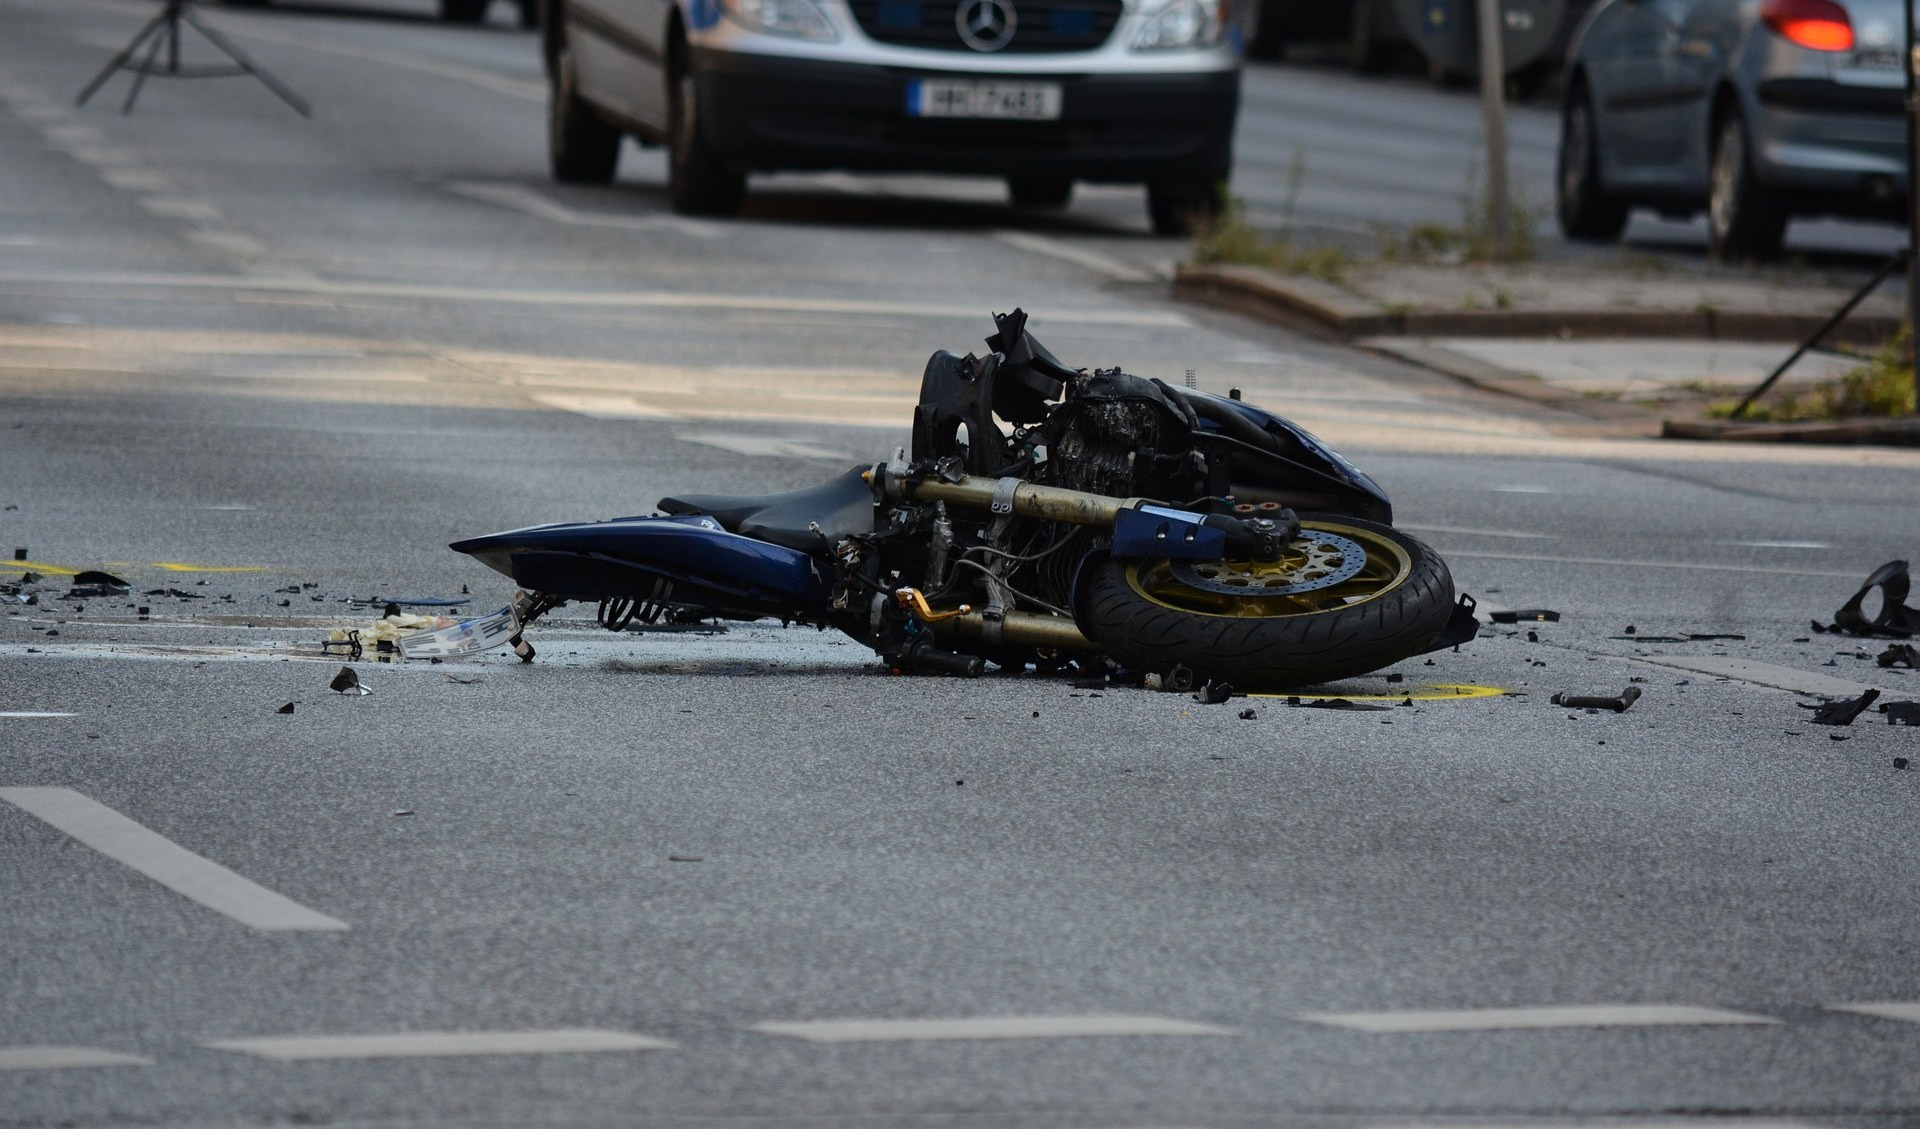 Incidente mortale a Savona, lo schianto fatale per un 29enne in scooter